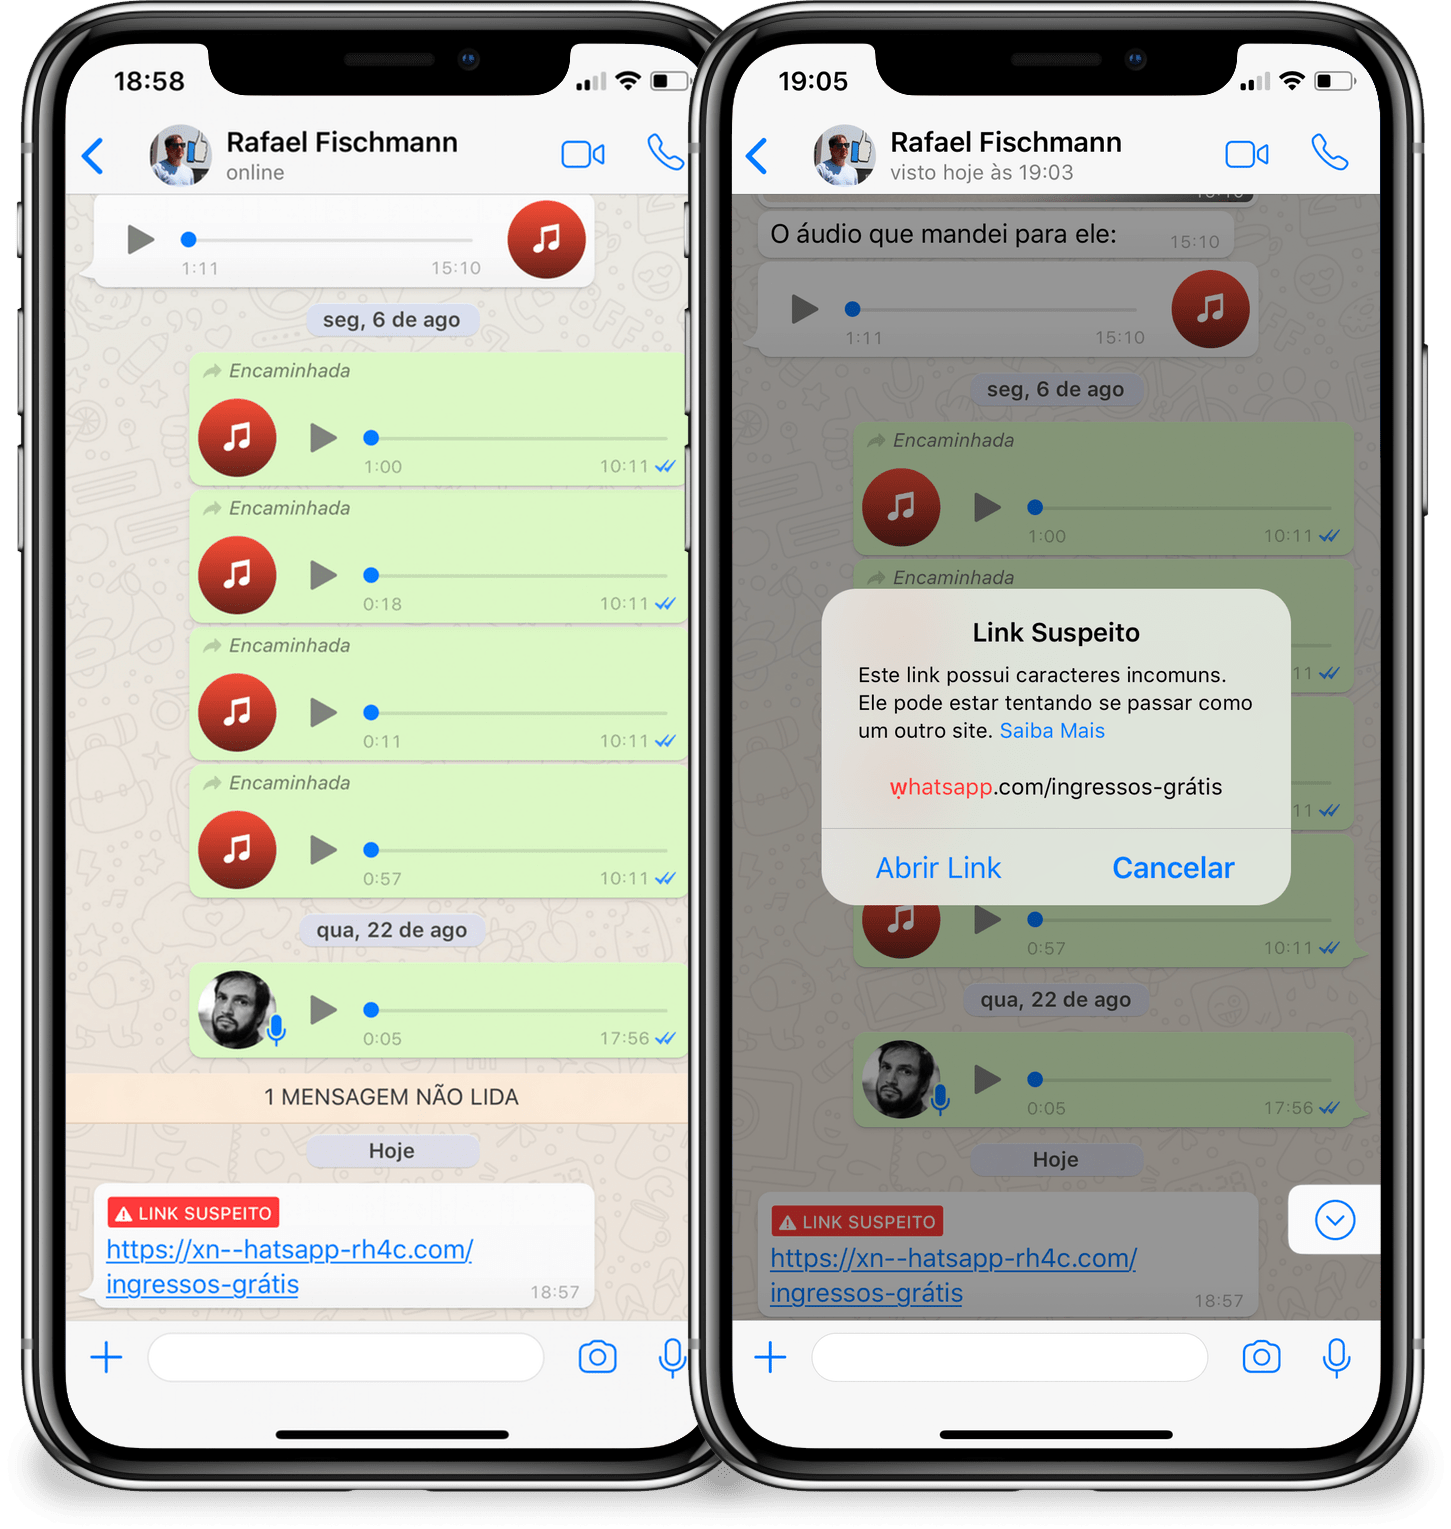 WhatsApp suspicious link alert